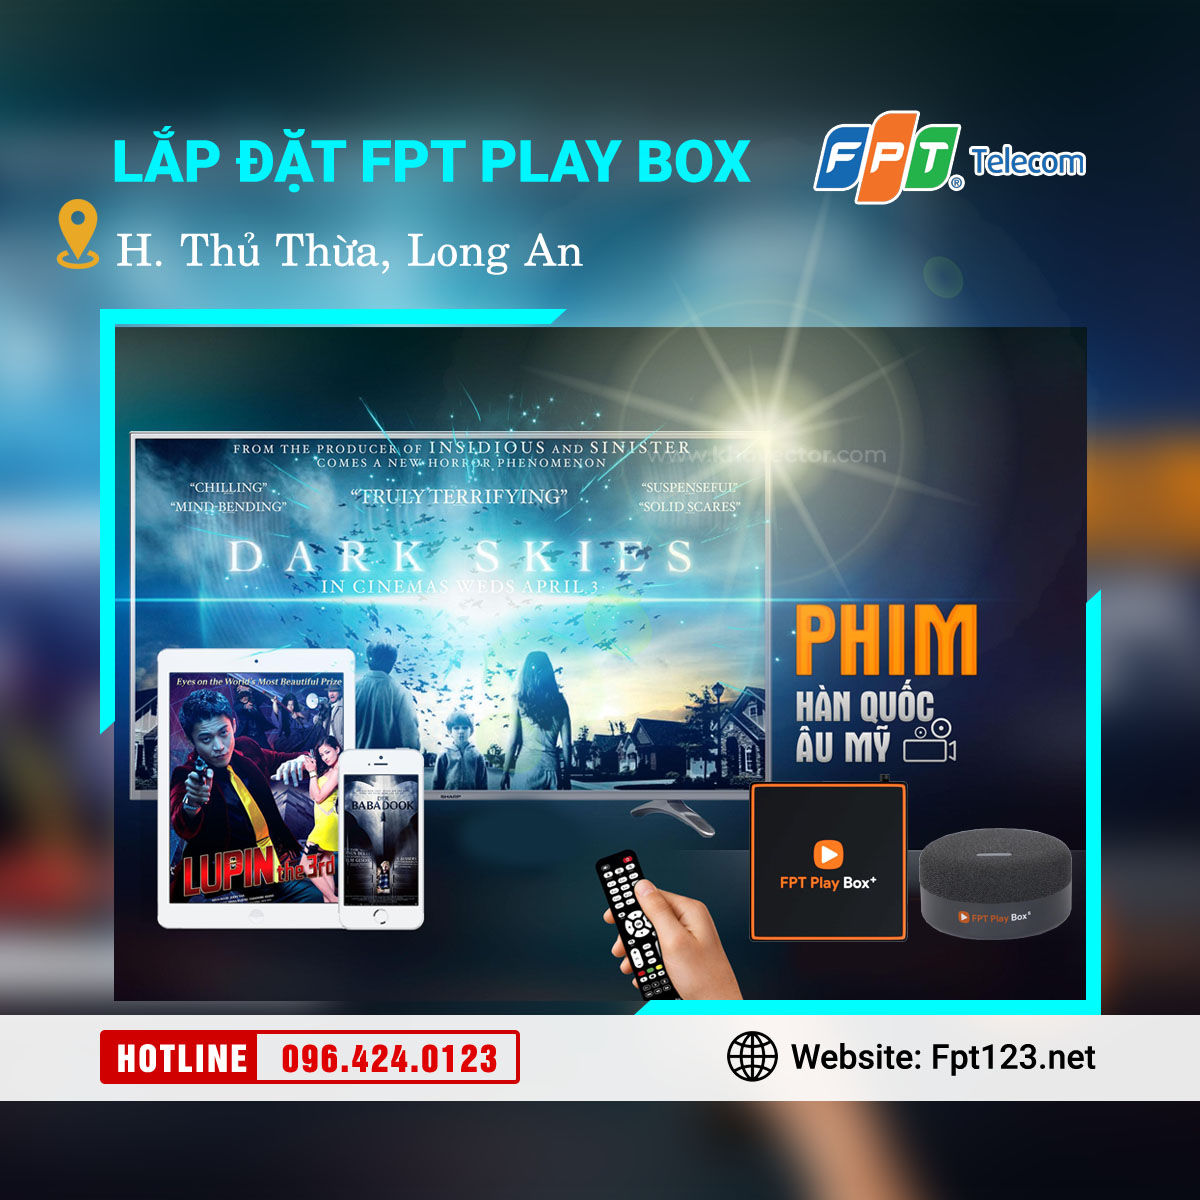 Lắp đặt FPT Play Box tại Thủ Thừa, Long An